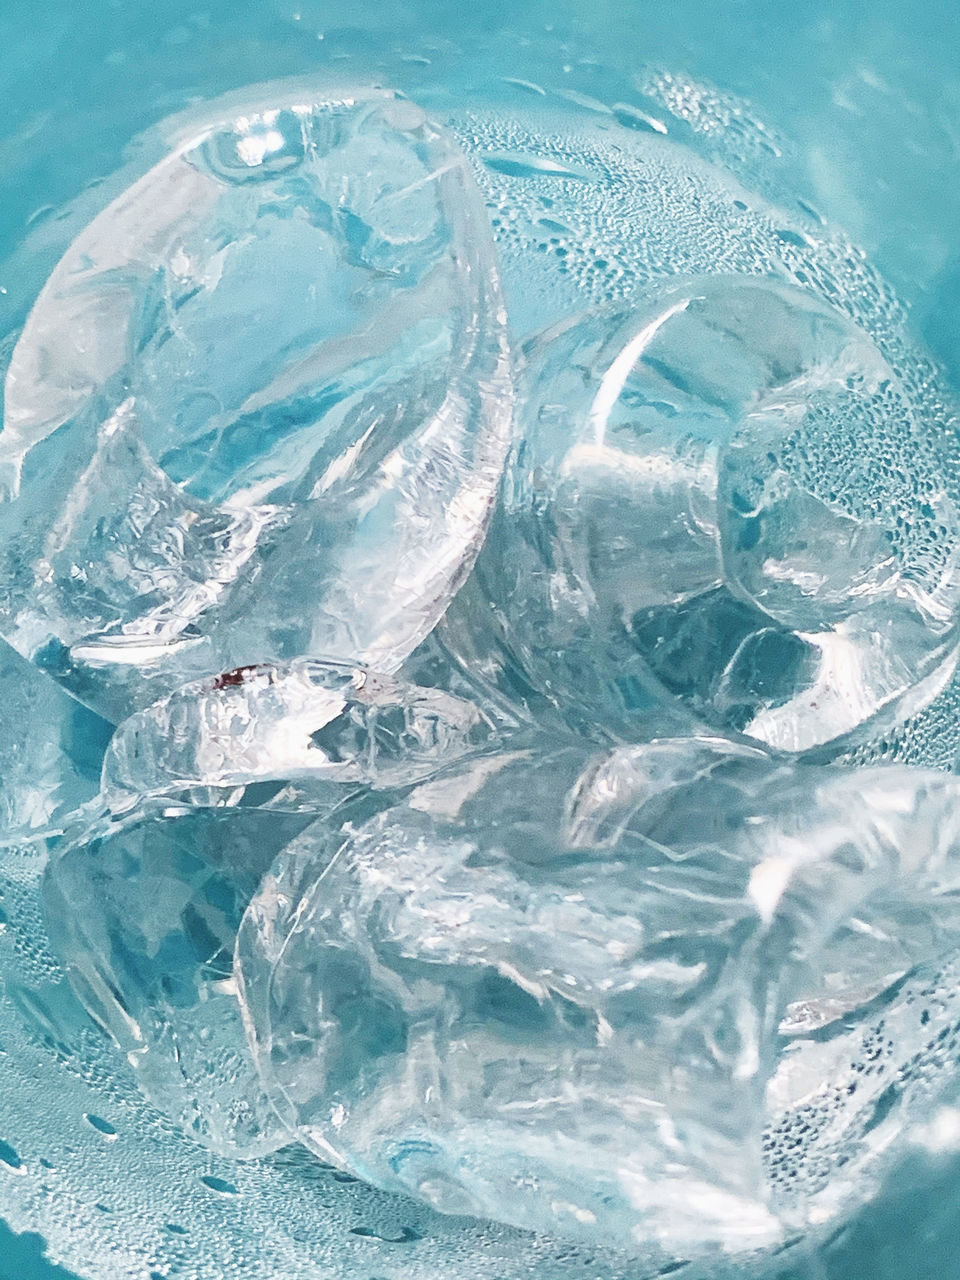 FULL FRAME SHOT OF ICE IN GLASS